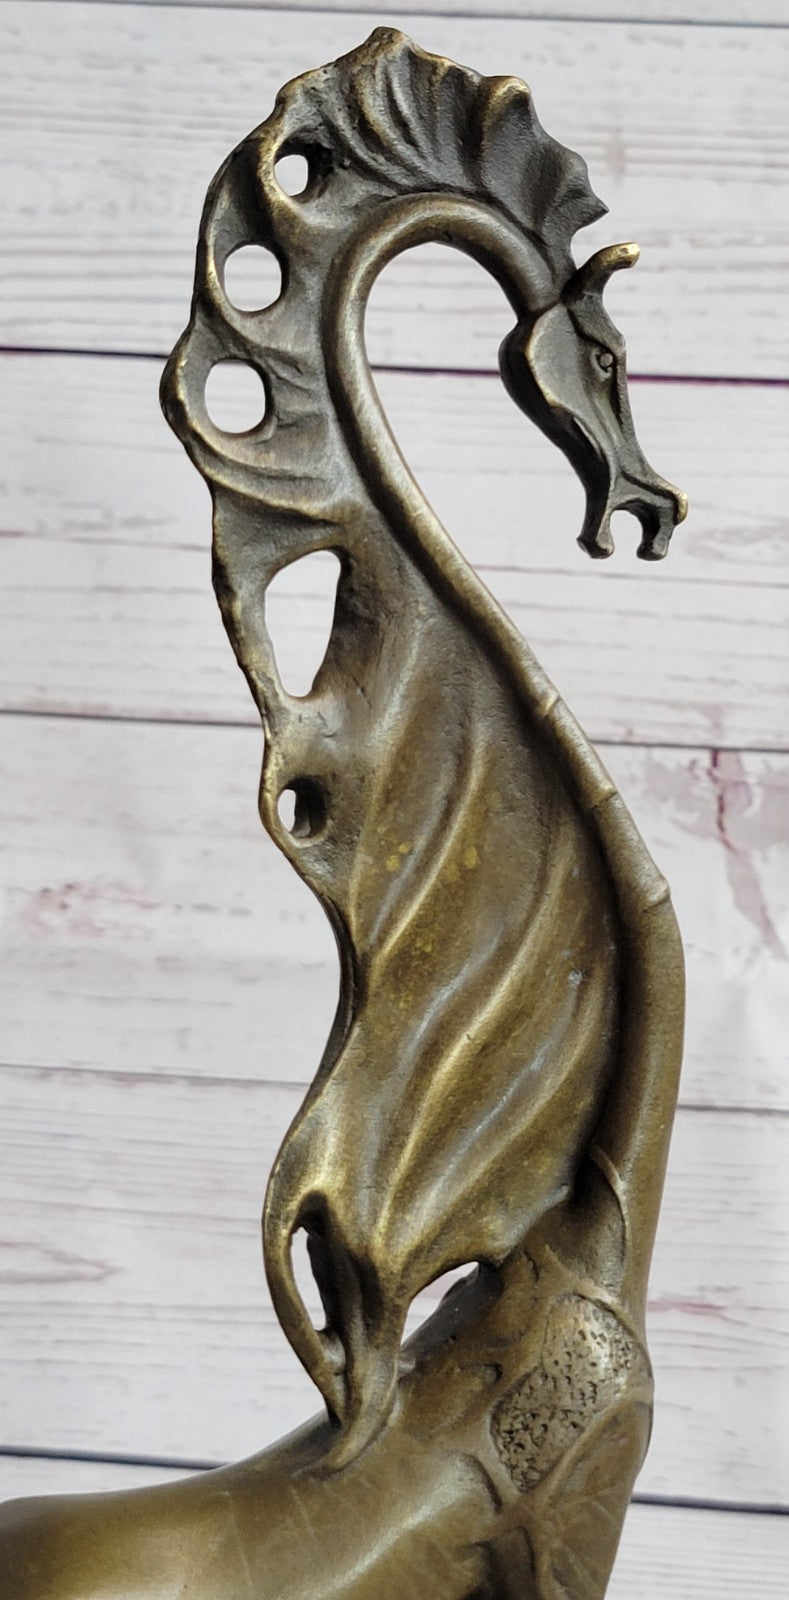 Abstract Modern Art Salvador Dali Horse Hot Cast Bronze Sculpture Marble Figurin